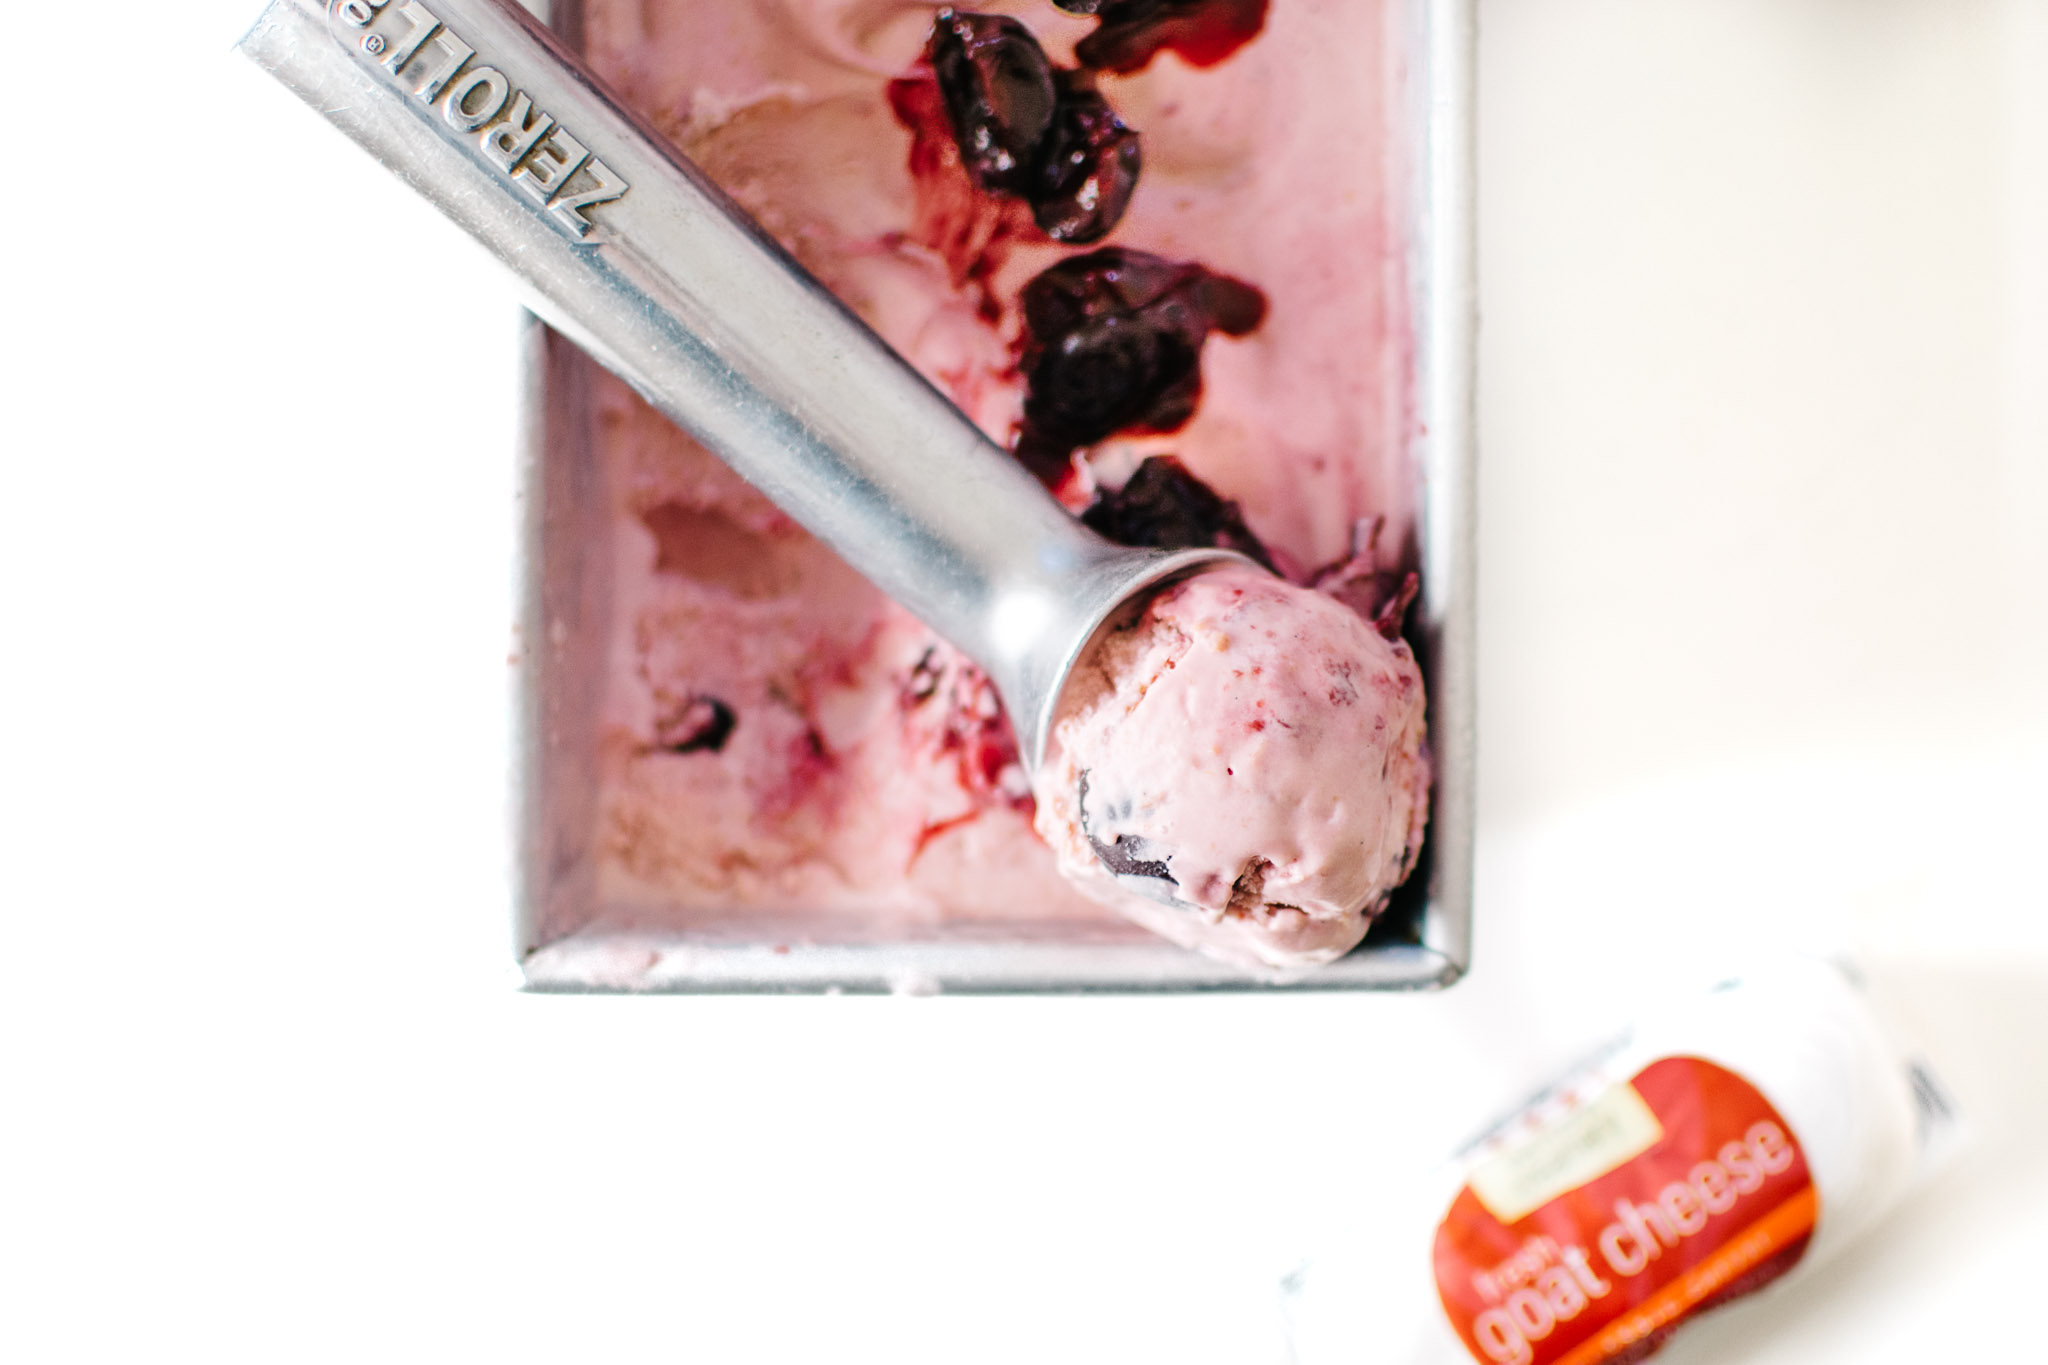 Chèvre Cherry Buttermilk Ice Cream